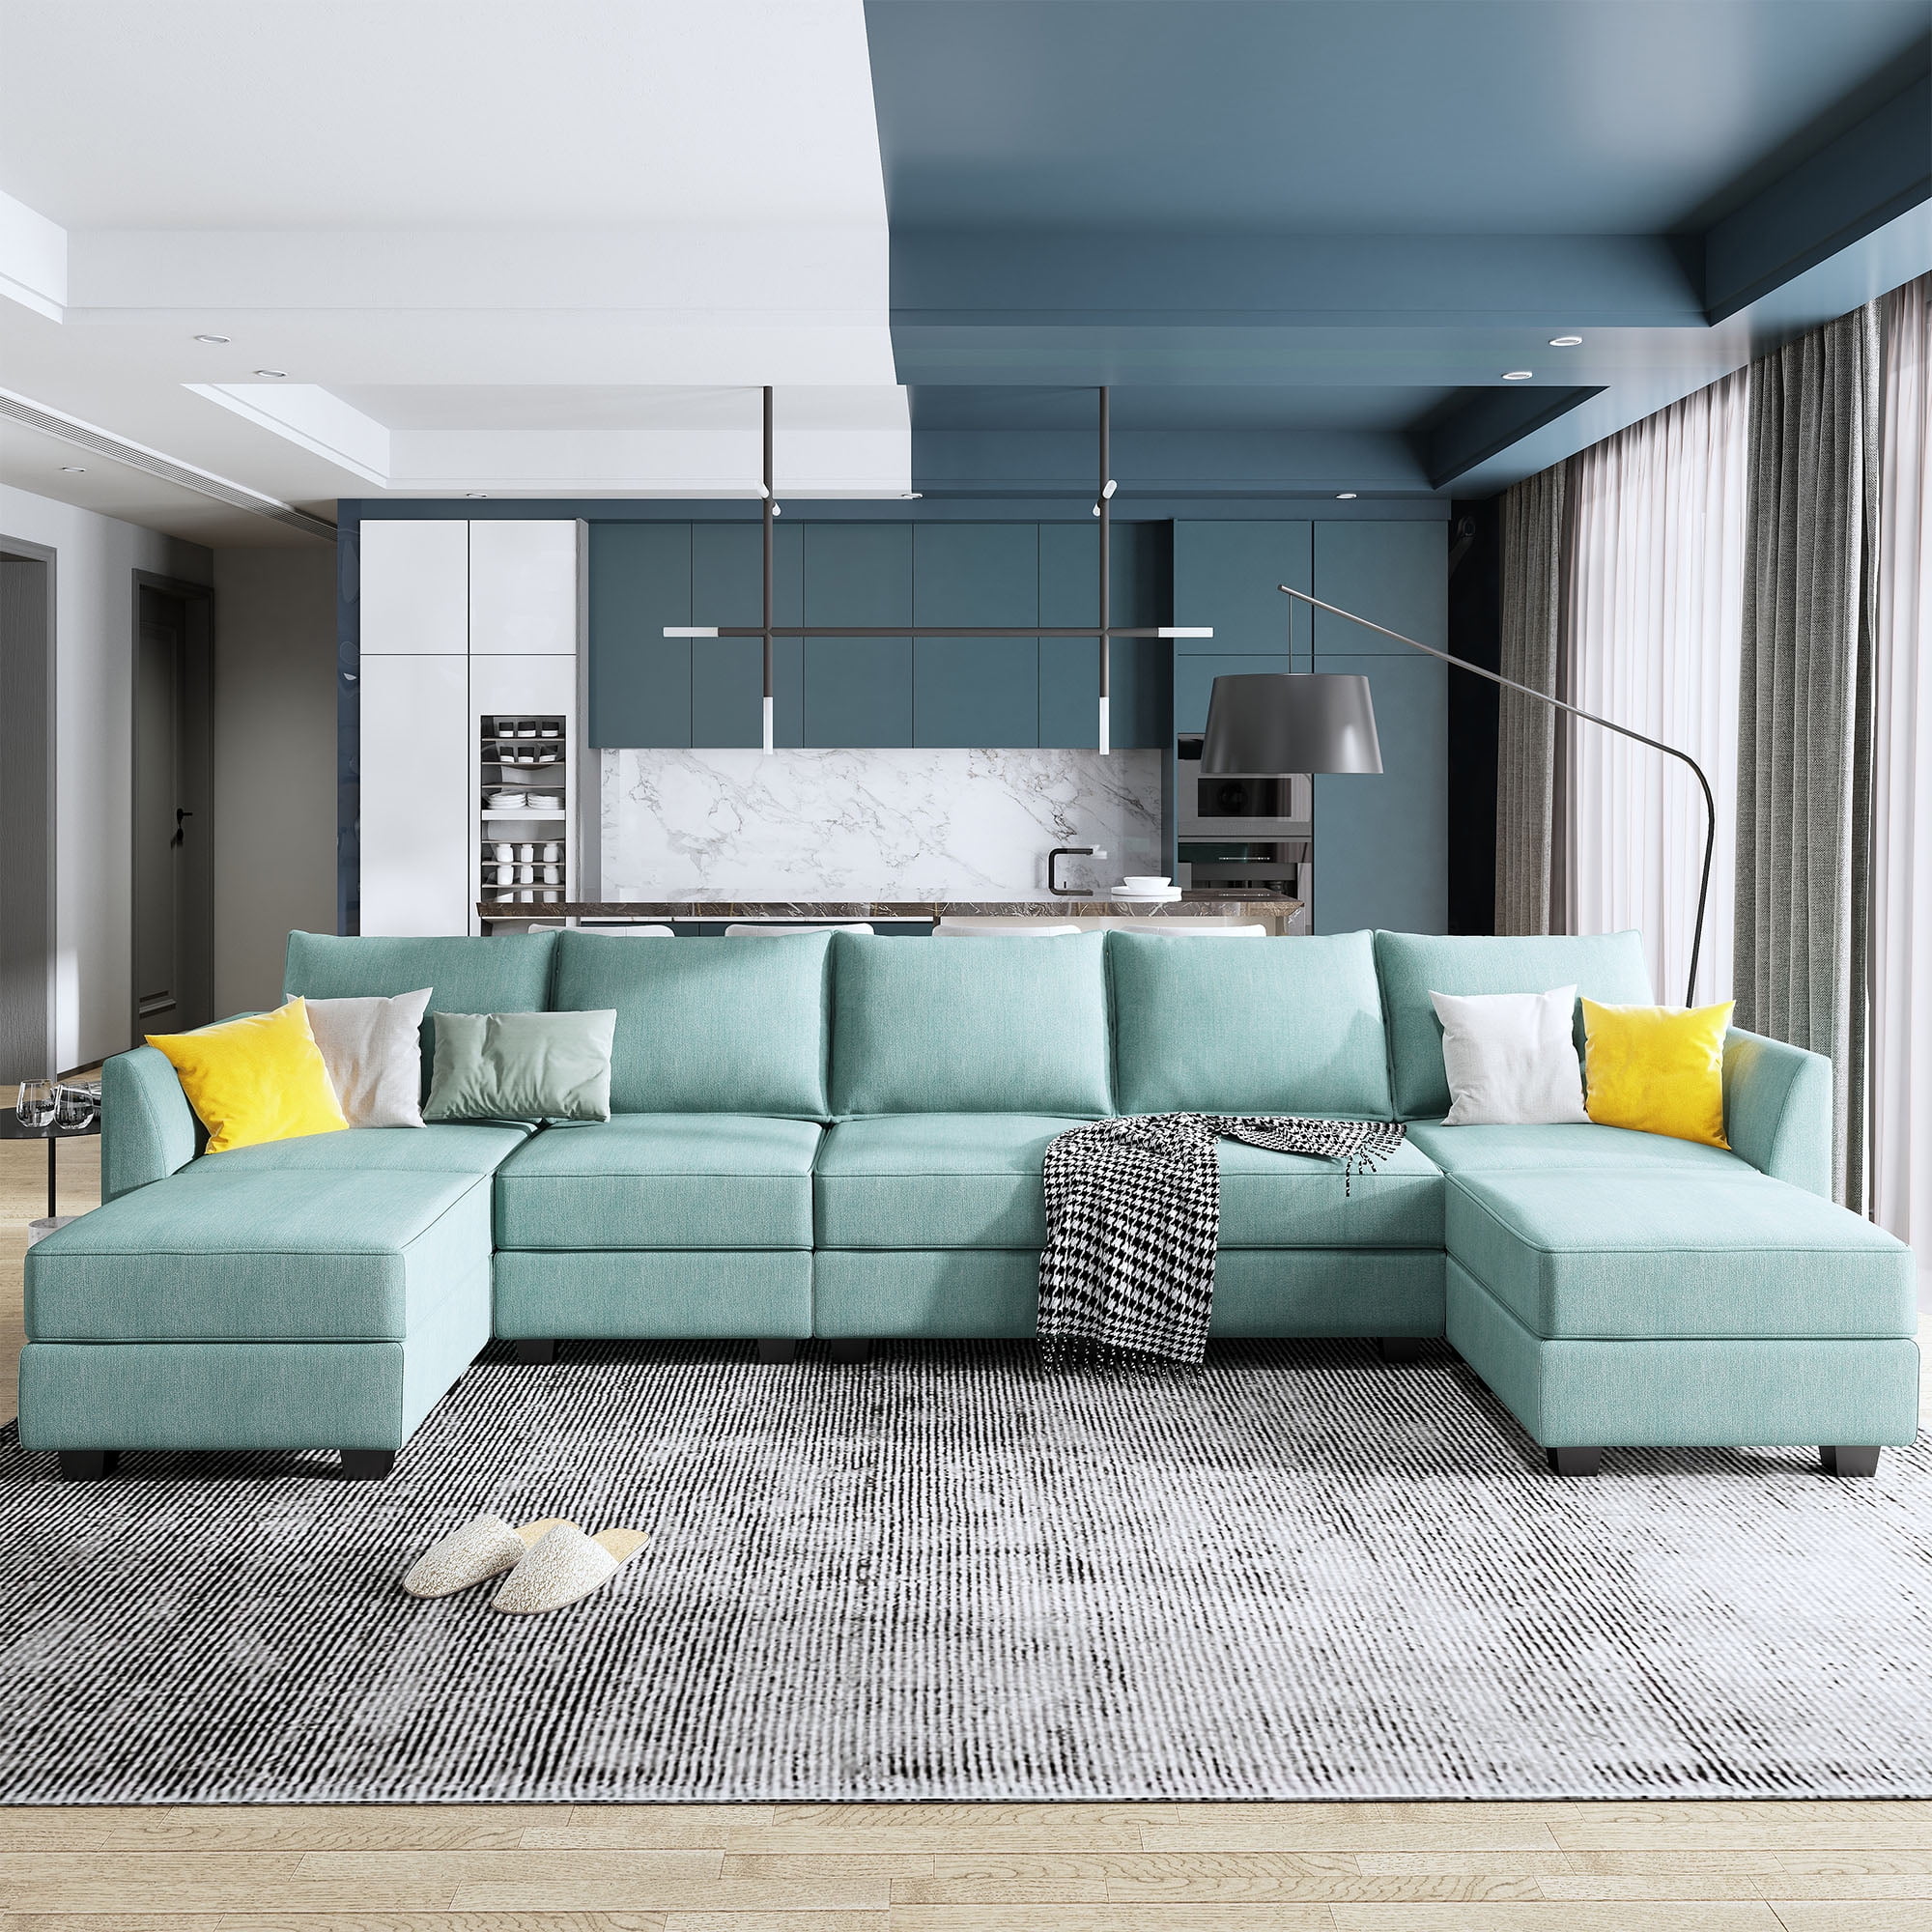 Honbay Convertible Modular Sofa For